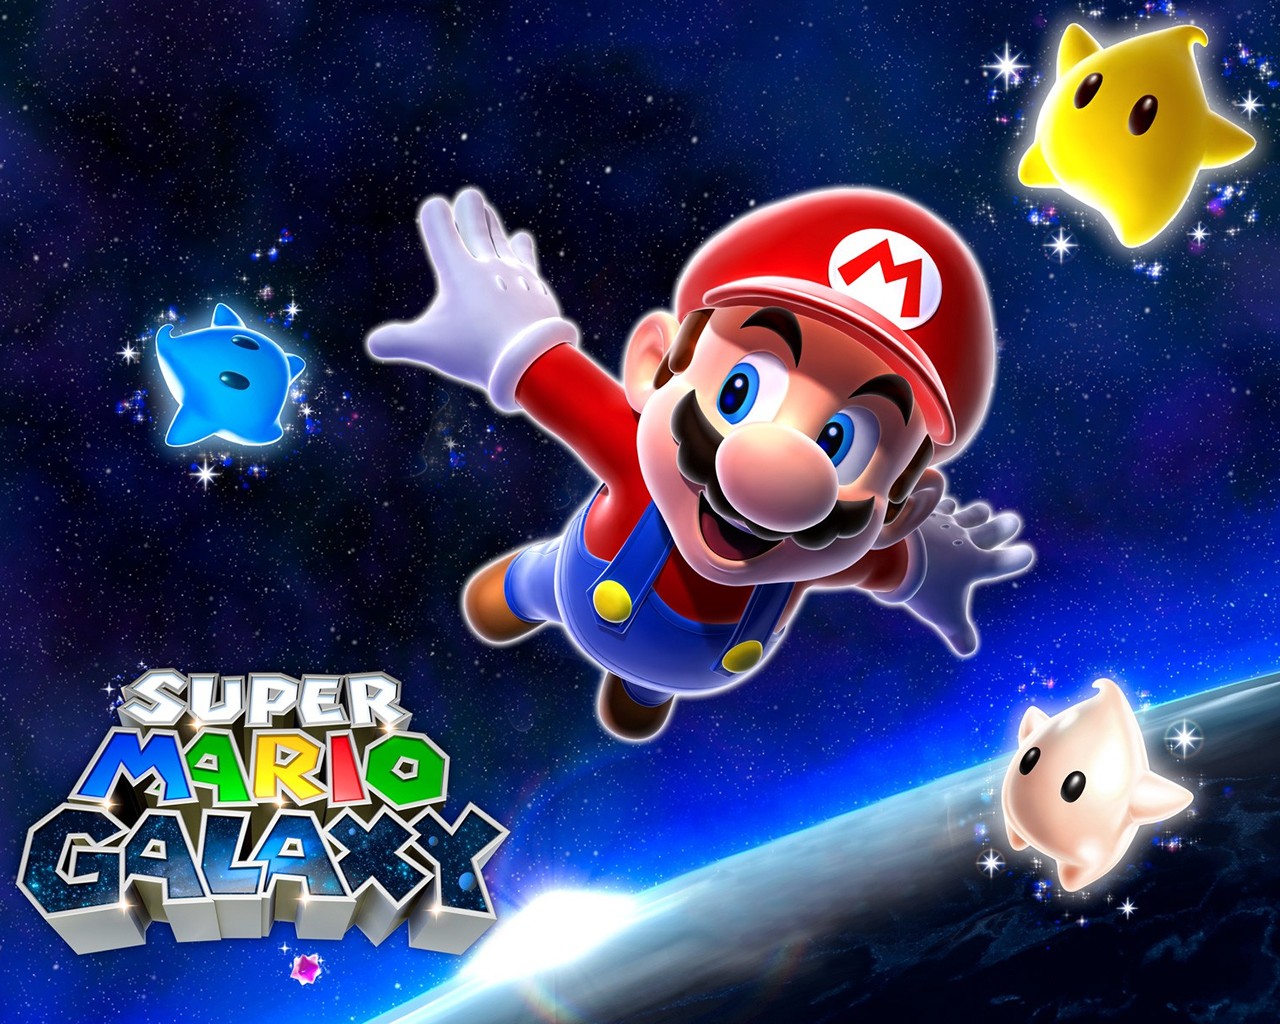 "Super Mario Galaxy" desktop wallpaper (1280 x 1024 pixels)